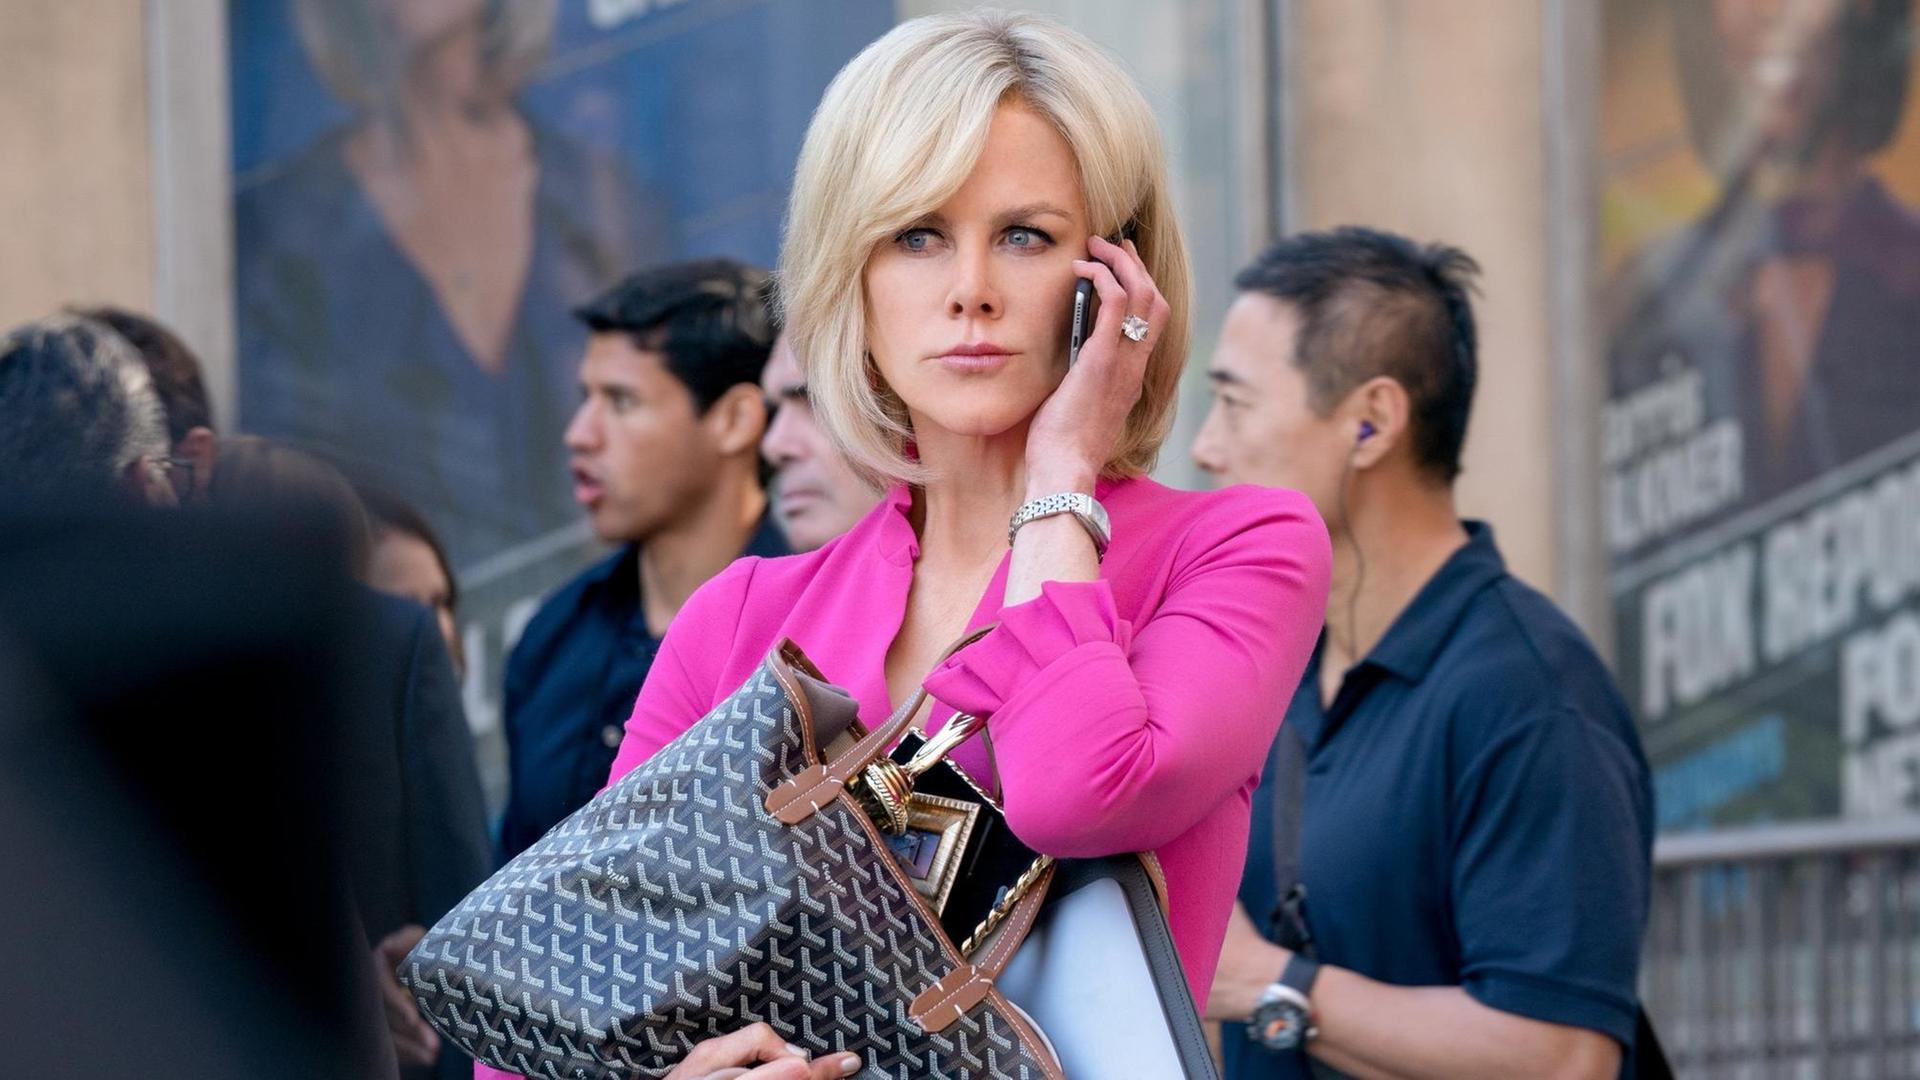 Szene Nicole Kidman als Gretchen Carlson in "Bombshell": Sie steht mit sehr blonden Haaren in einem pinken Kostüm vor einem Kino, um sie herum Menschen. Sie hält sich ein Smartphone ans Ohr und hält mit der anderen Hand eine prall gefüllte große Handtasche.